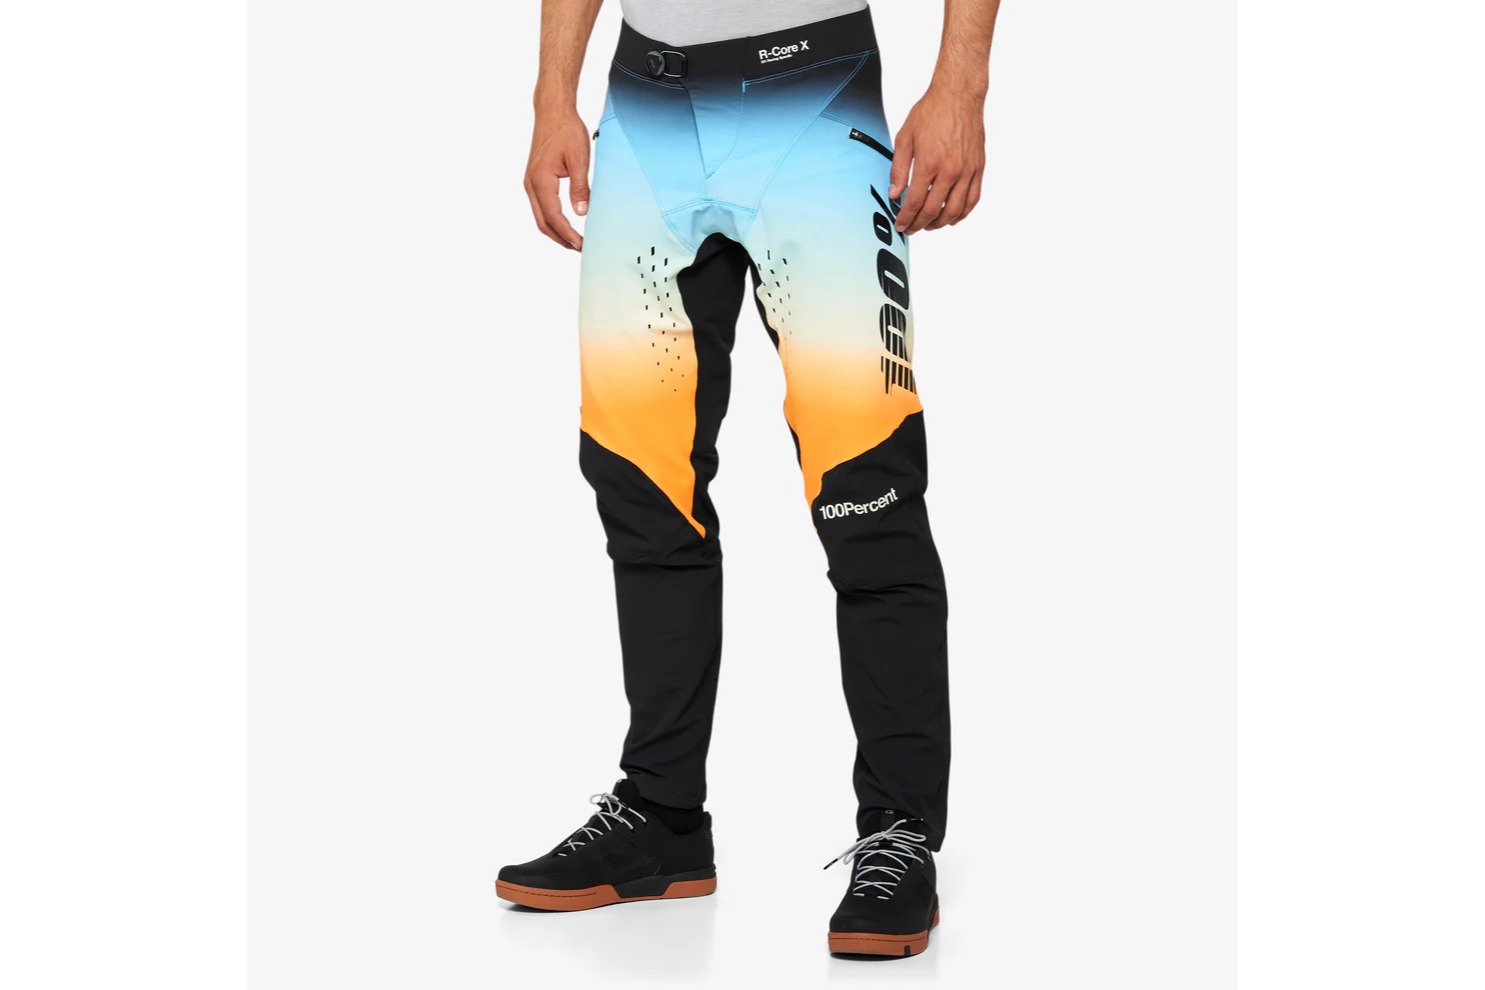 100% R-Core-X LE Pants